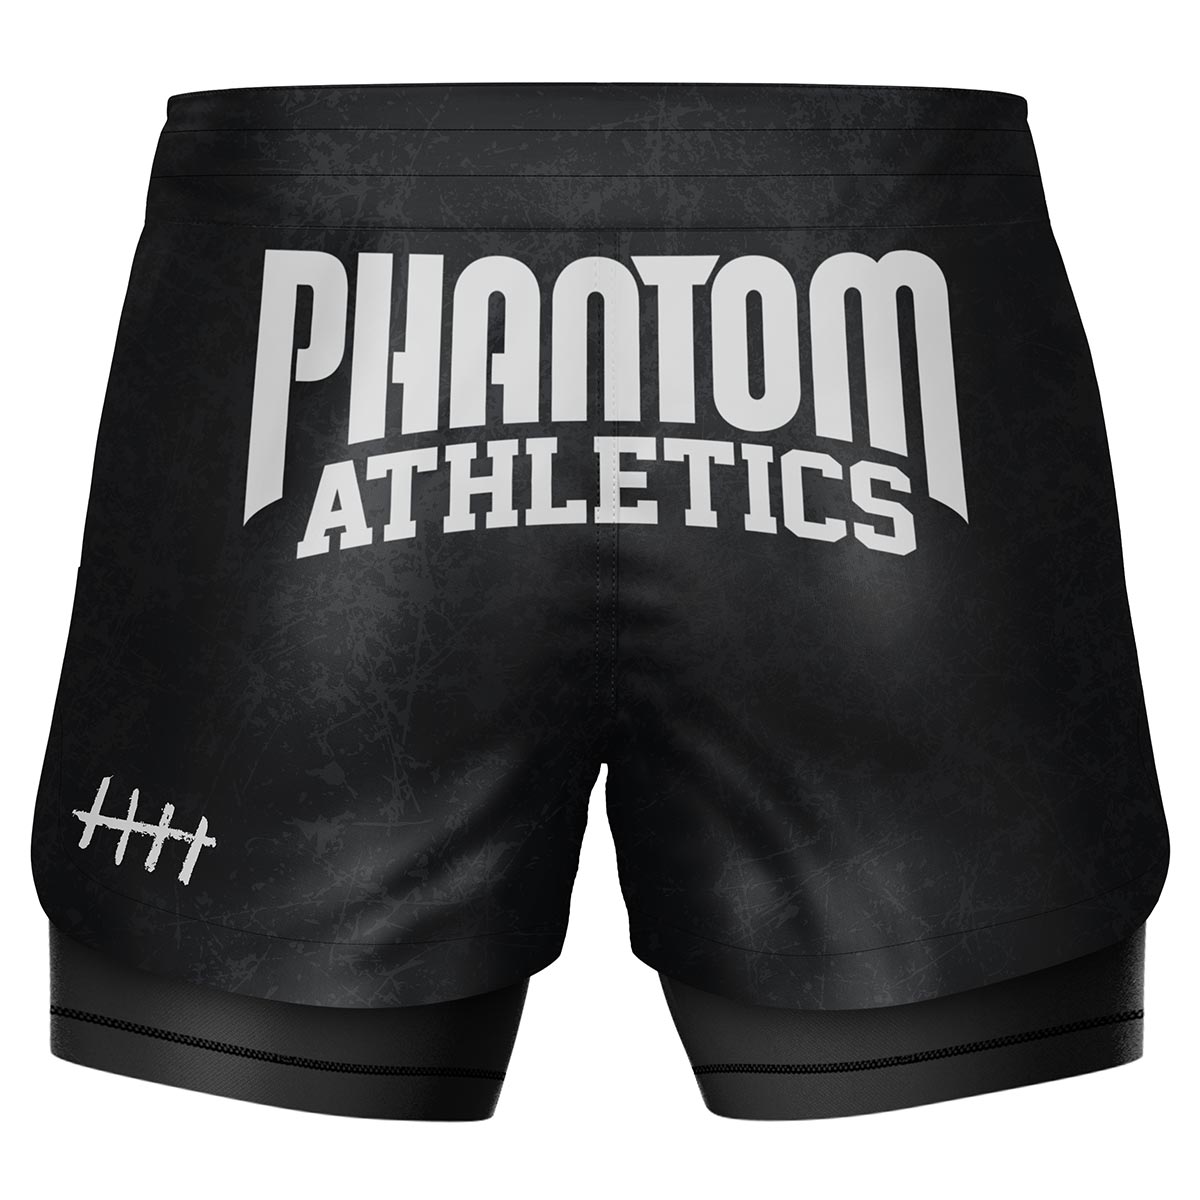 Phantom Fightshorts Fusion 2in1. Ultimative Shorts für deinen Kampfsport mit integrierter Compression Shorts. Ideal für MMA, BJJ, Ringen, Grappling oder Muay Thai. In schwarz mit Serious Smiley Design.